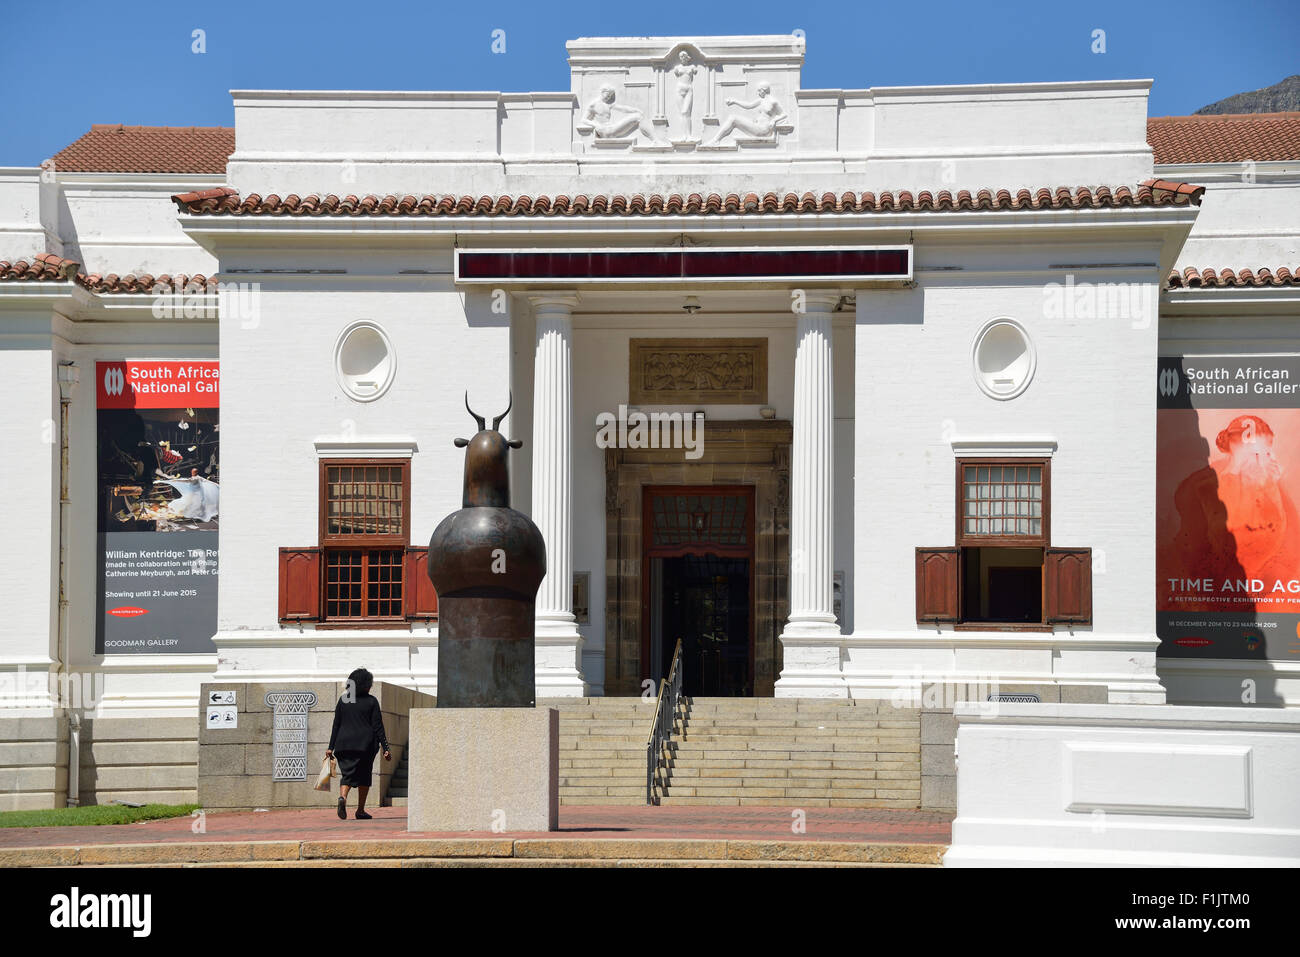 South African National Gallery, la società del giardino, Cape Town, Provincia del Capo occidentale, Repubblica del Sud Africa Foto Stock